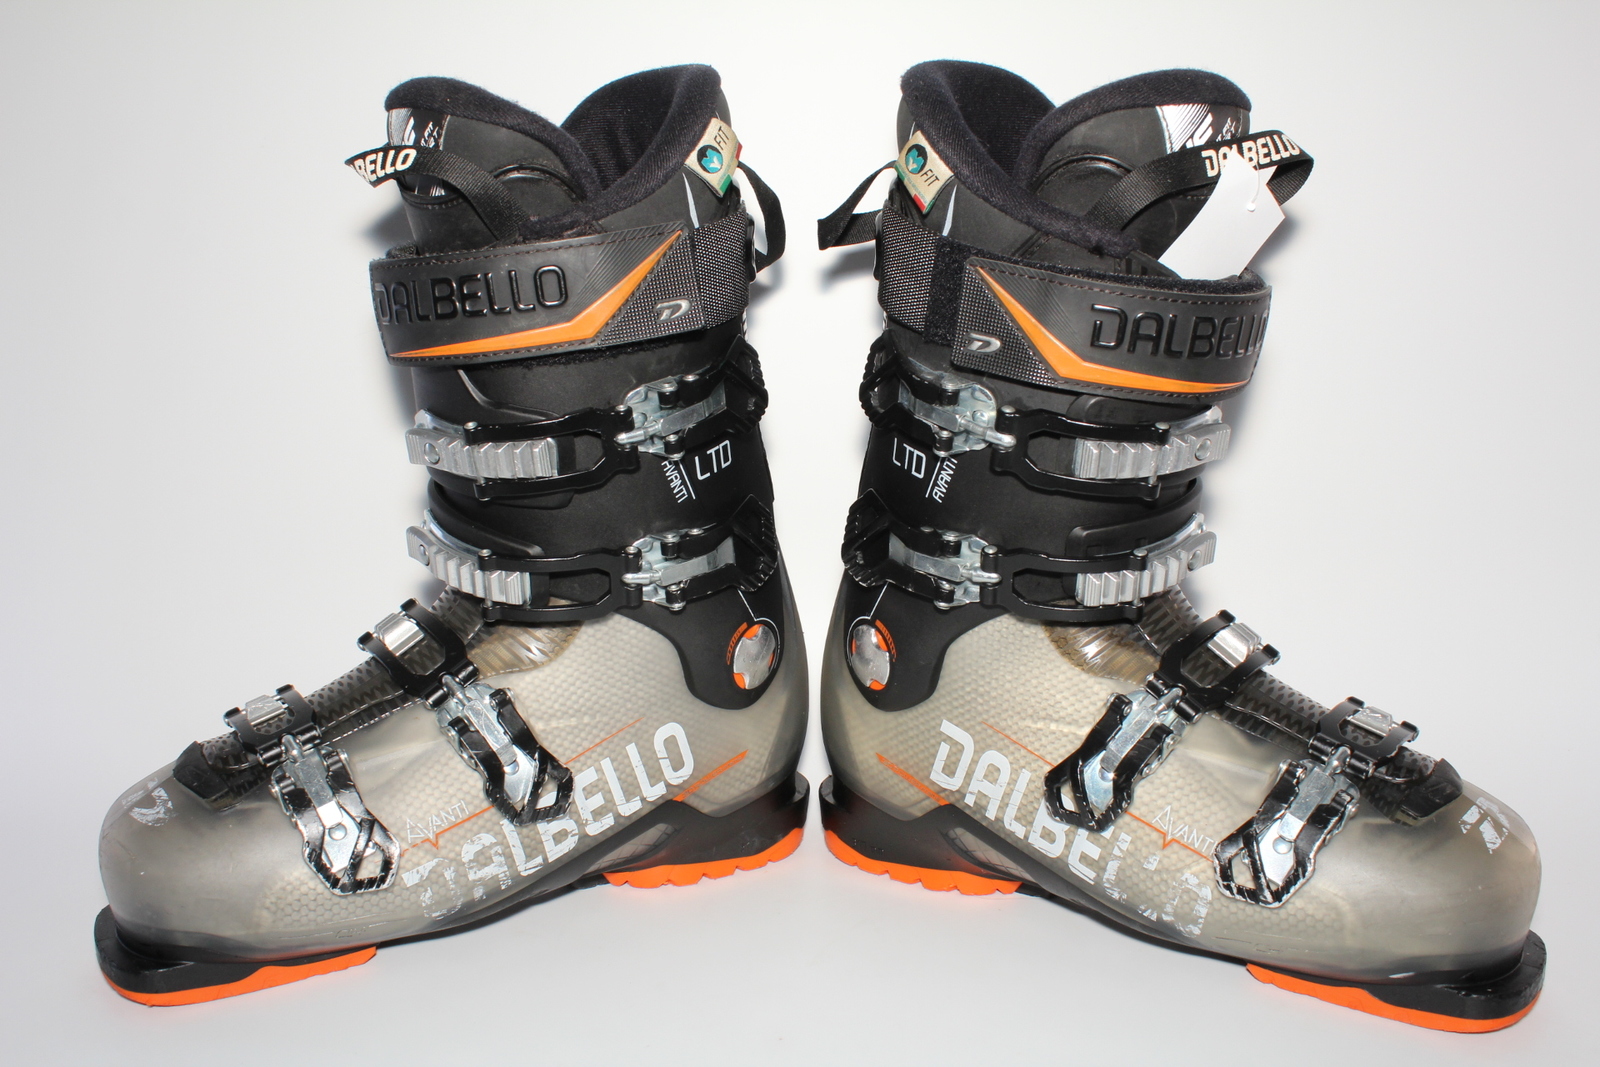 Lyžařské boty Dalbello Avanti  LTD vel. EU42.5 flexe 80